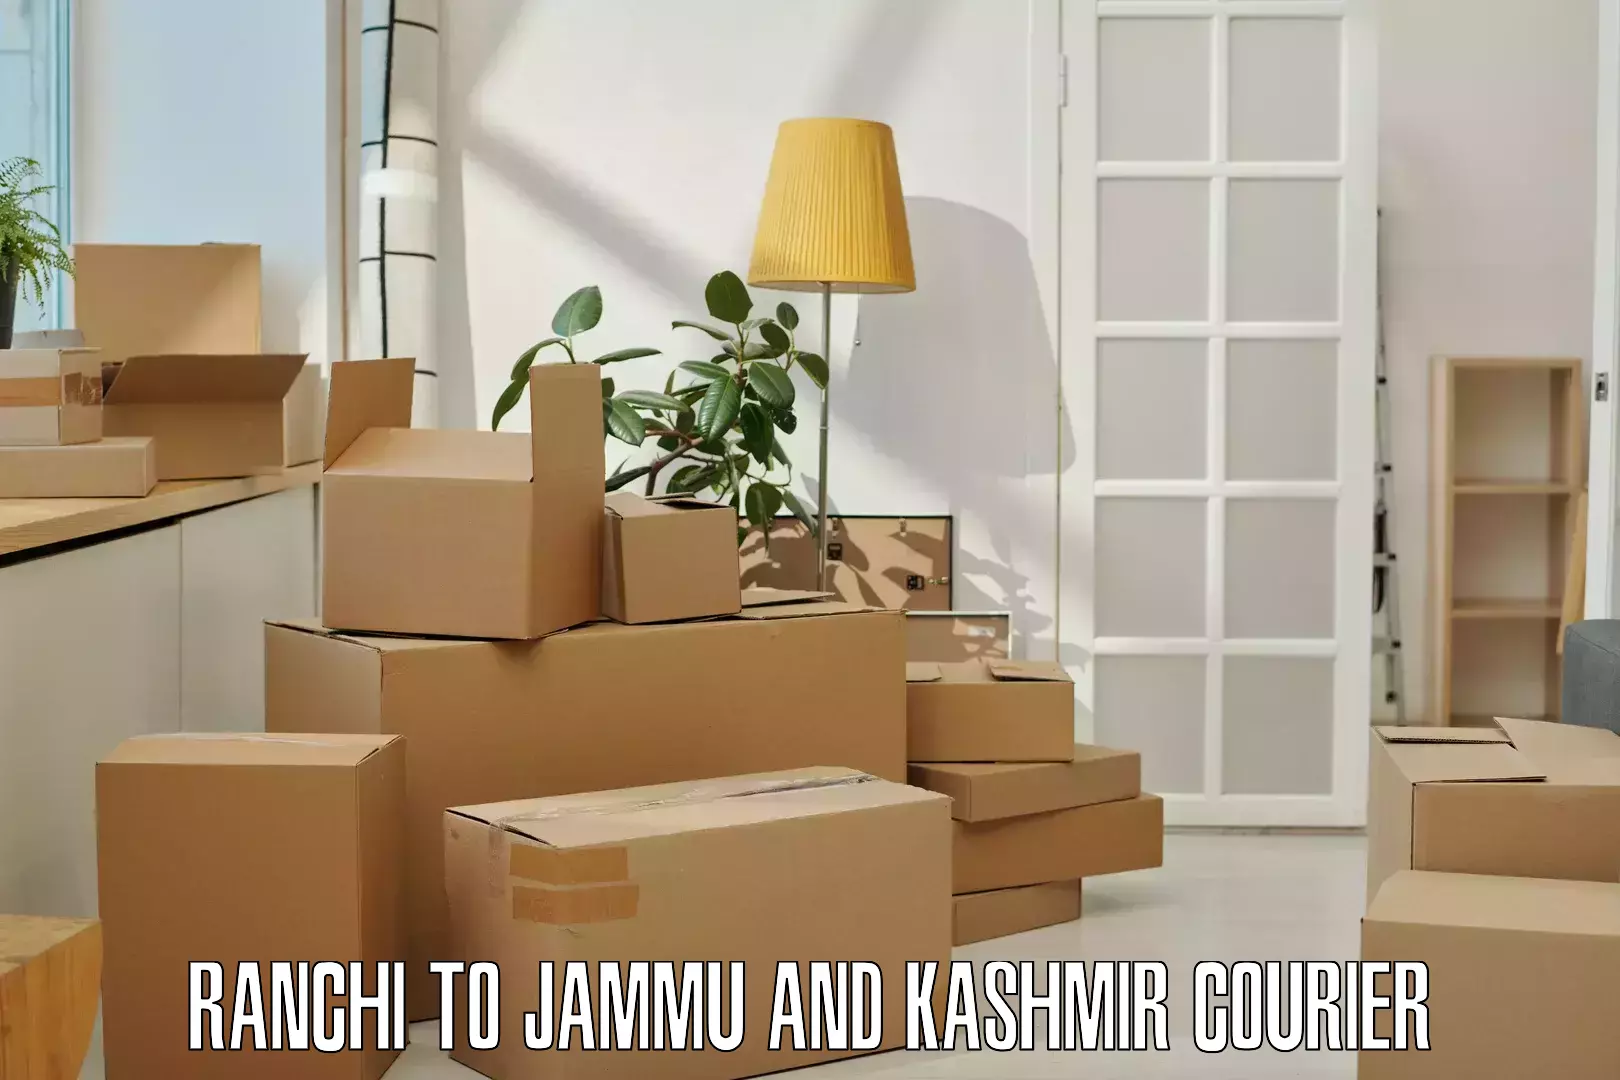 24-hour courier service Ranchi to Kishtwar